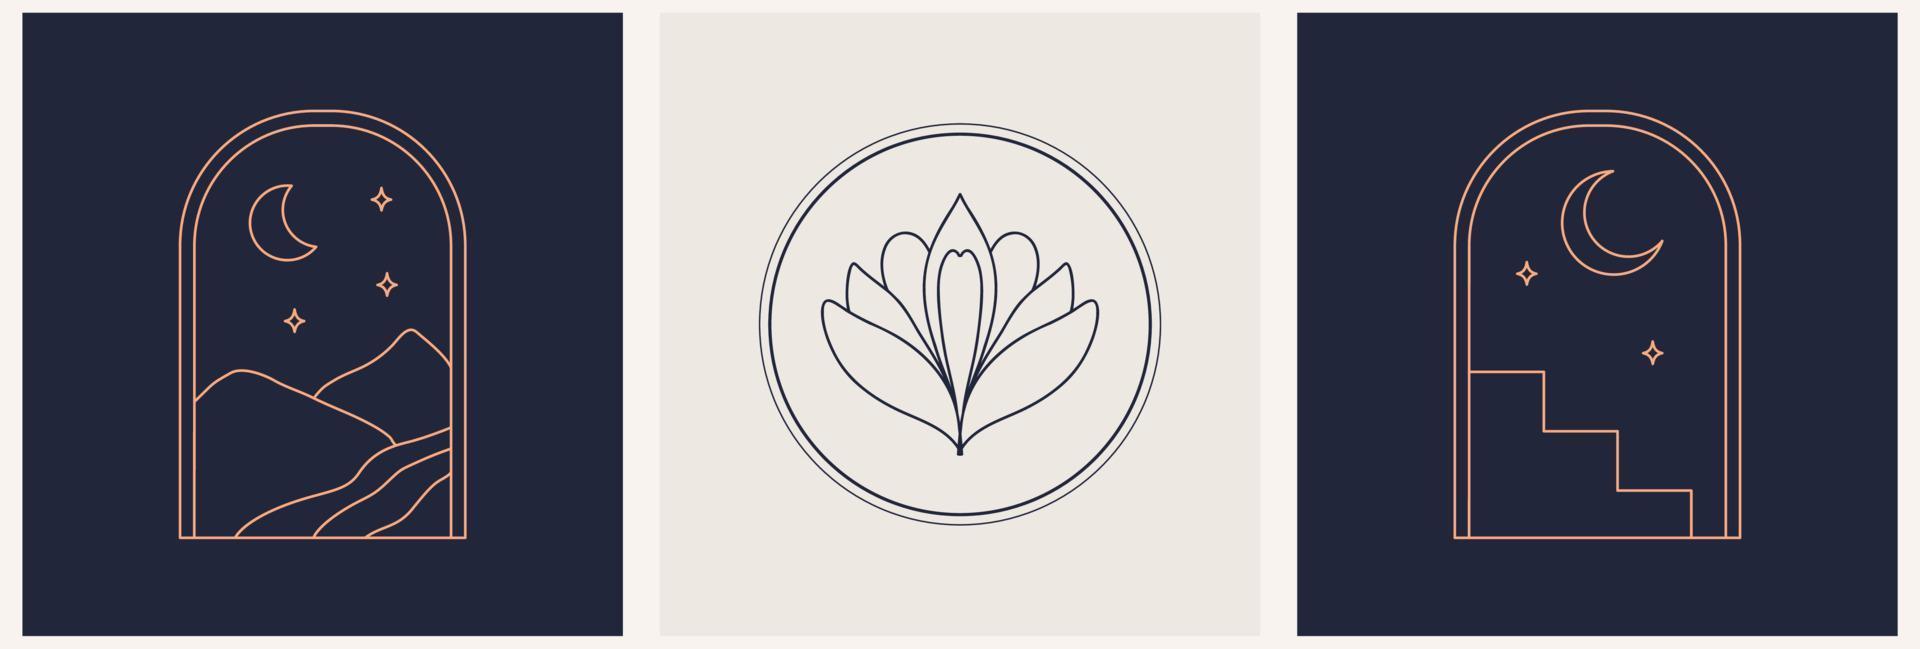 symboles de logo de modèle de jeu linéaire avec des arcs de lotus et de nuit sur un fond nu vecteur